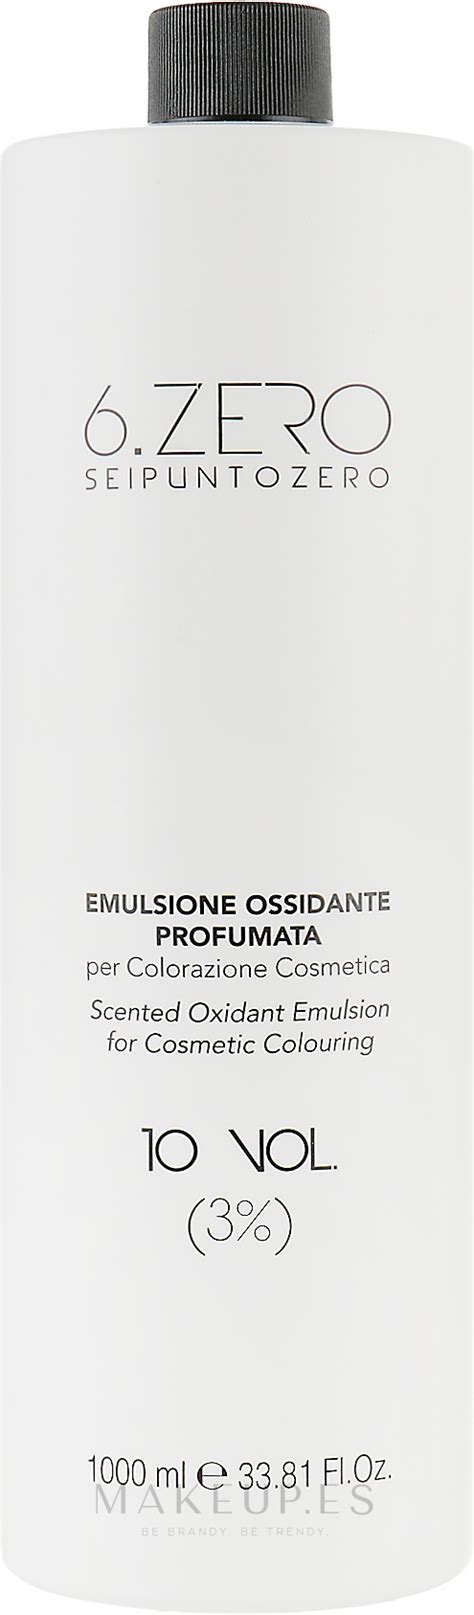 Seipuntozero Scented Oxidant Emulsion 10 Volumes 3 Crema Oxidante